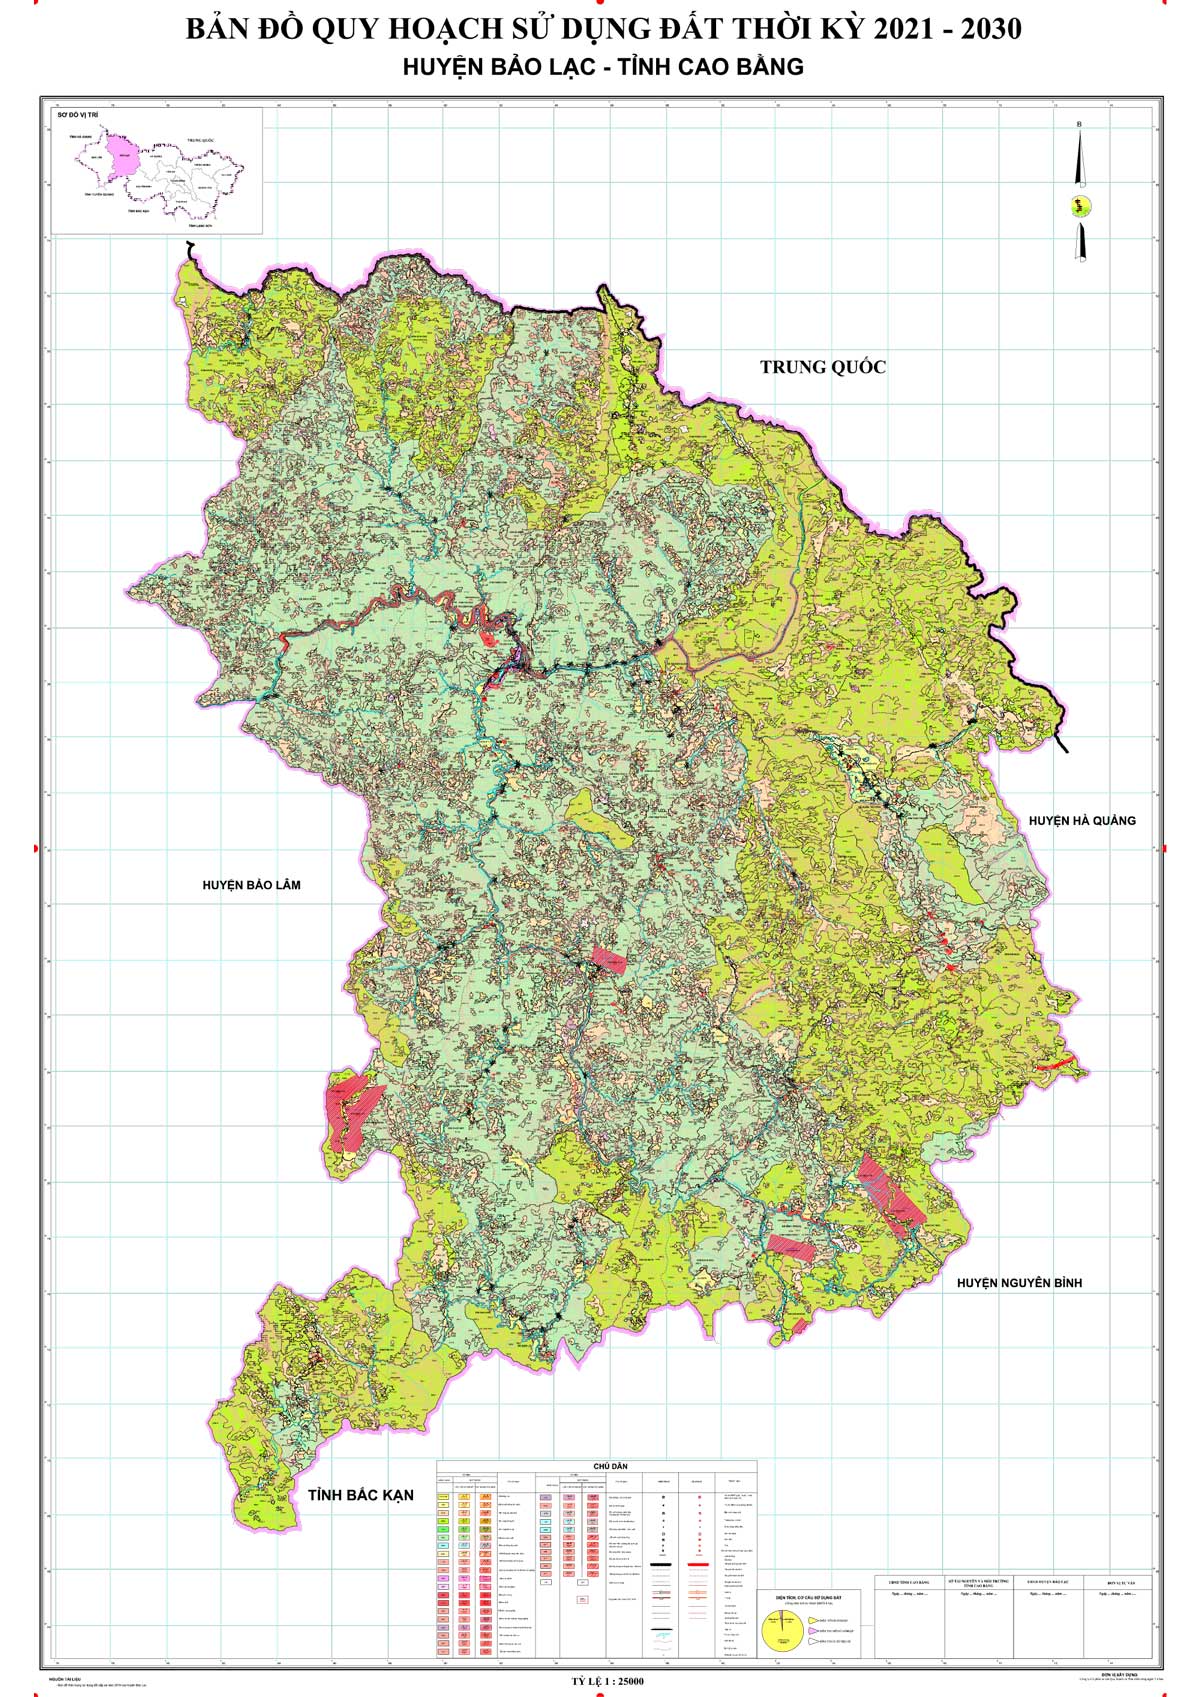 Bản đồ QHSDĐ huyện Bảo Lạc đến năm 2030